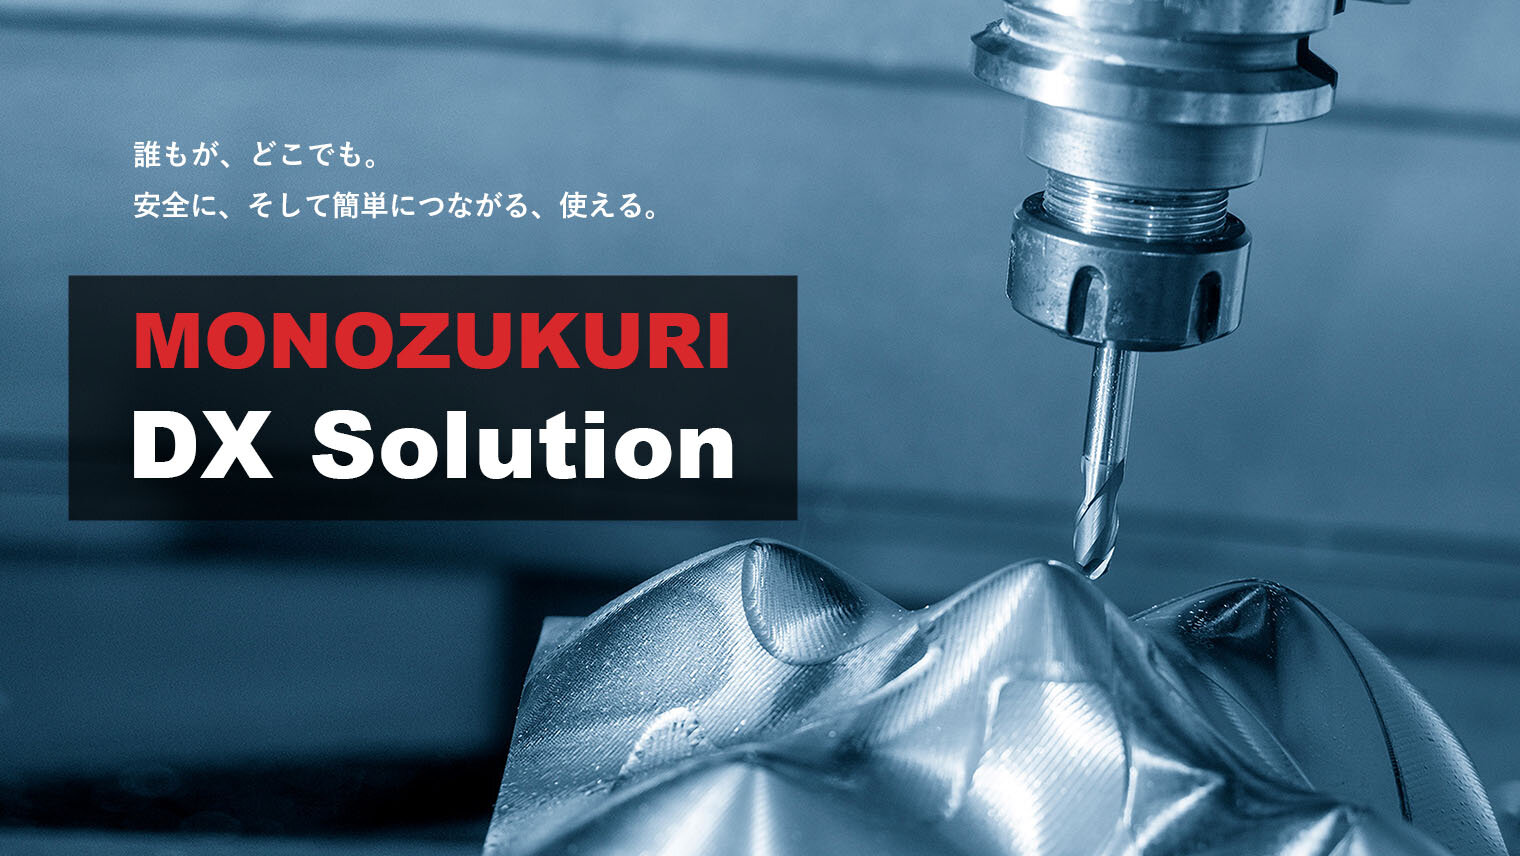 Sony Startup Acceleration Programの公式サイトで、ものづくりクラウドプラットフォーム「MONOZUKURI DX Solution」のパートナー企業募集